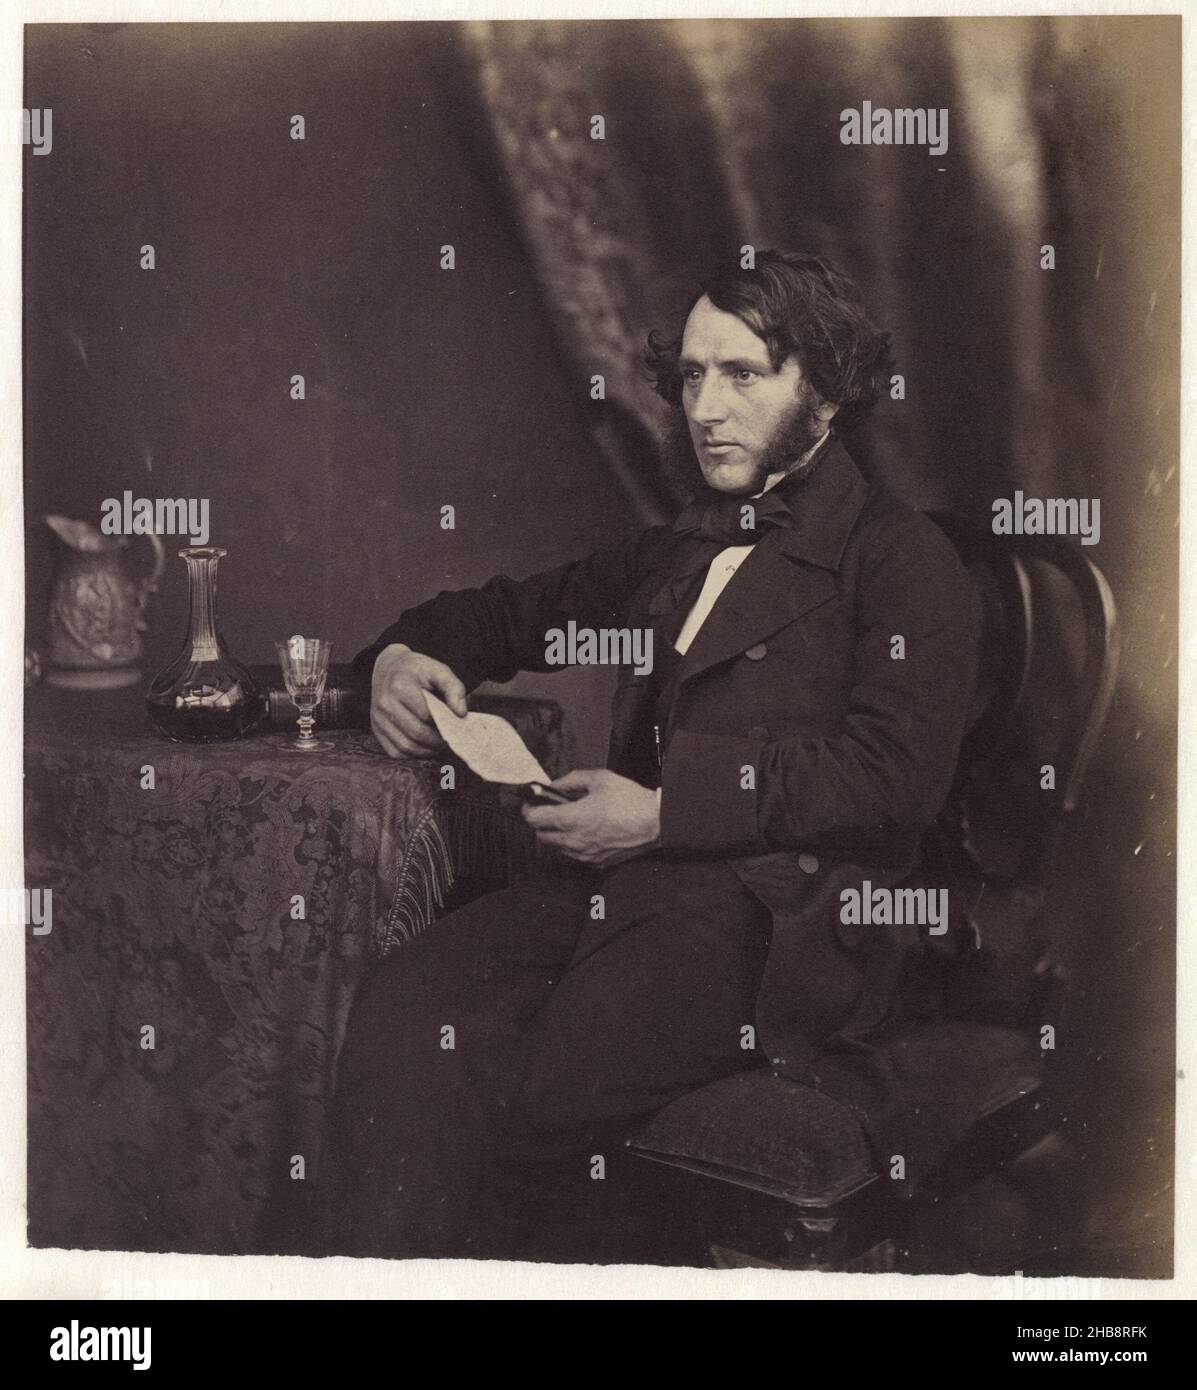 Ritratto di un uomo sconosciuto ad un tavolo con una lettera in mano, Roger Fenton (modo di), Gran Bretagna, 1855 - c.. 1865, supporto fotografico, stampa su carta salata, altezza 175 mm x larghezza 165 mm Foto Stock